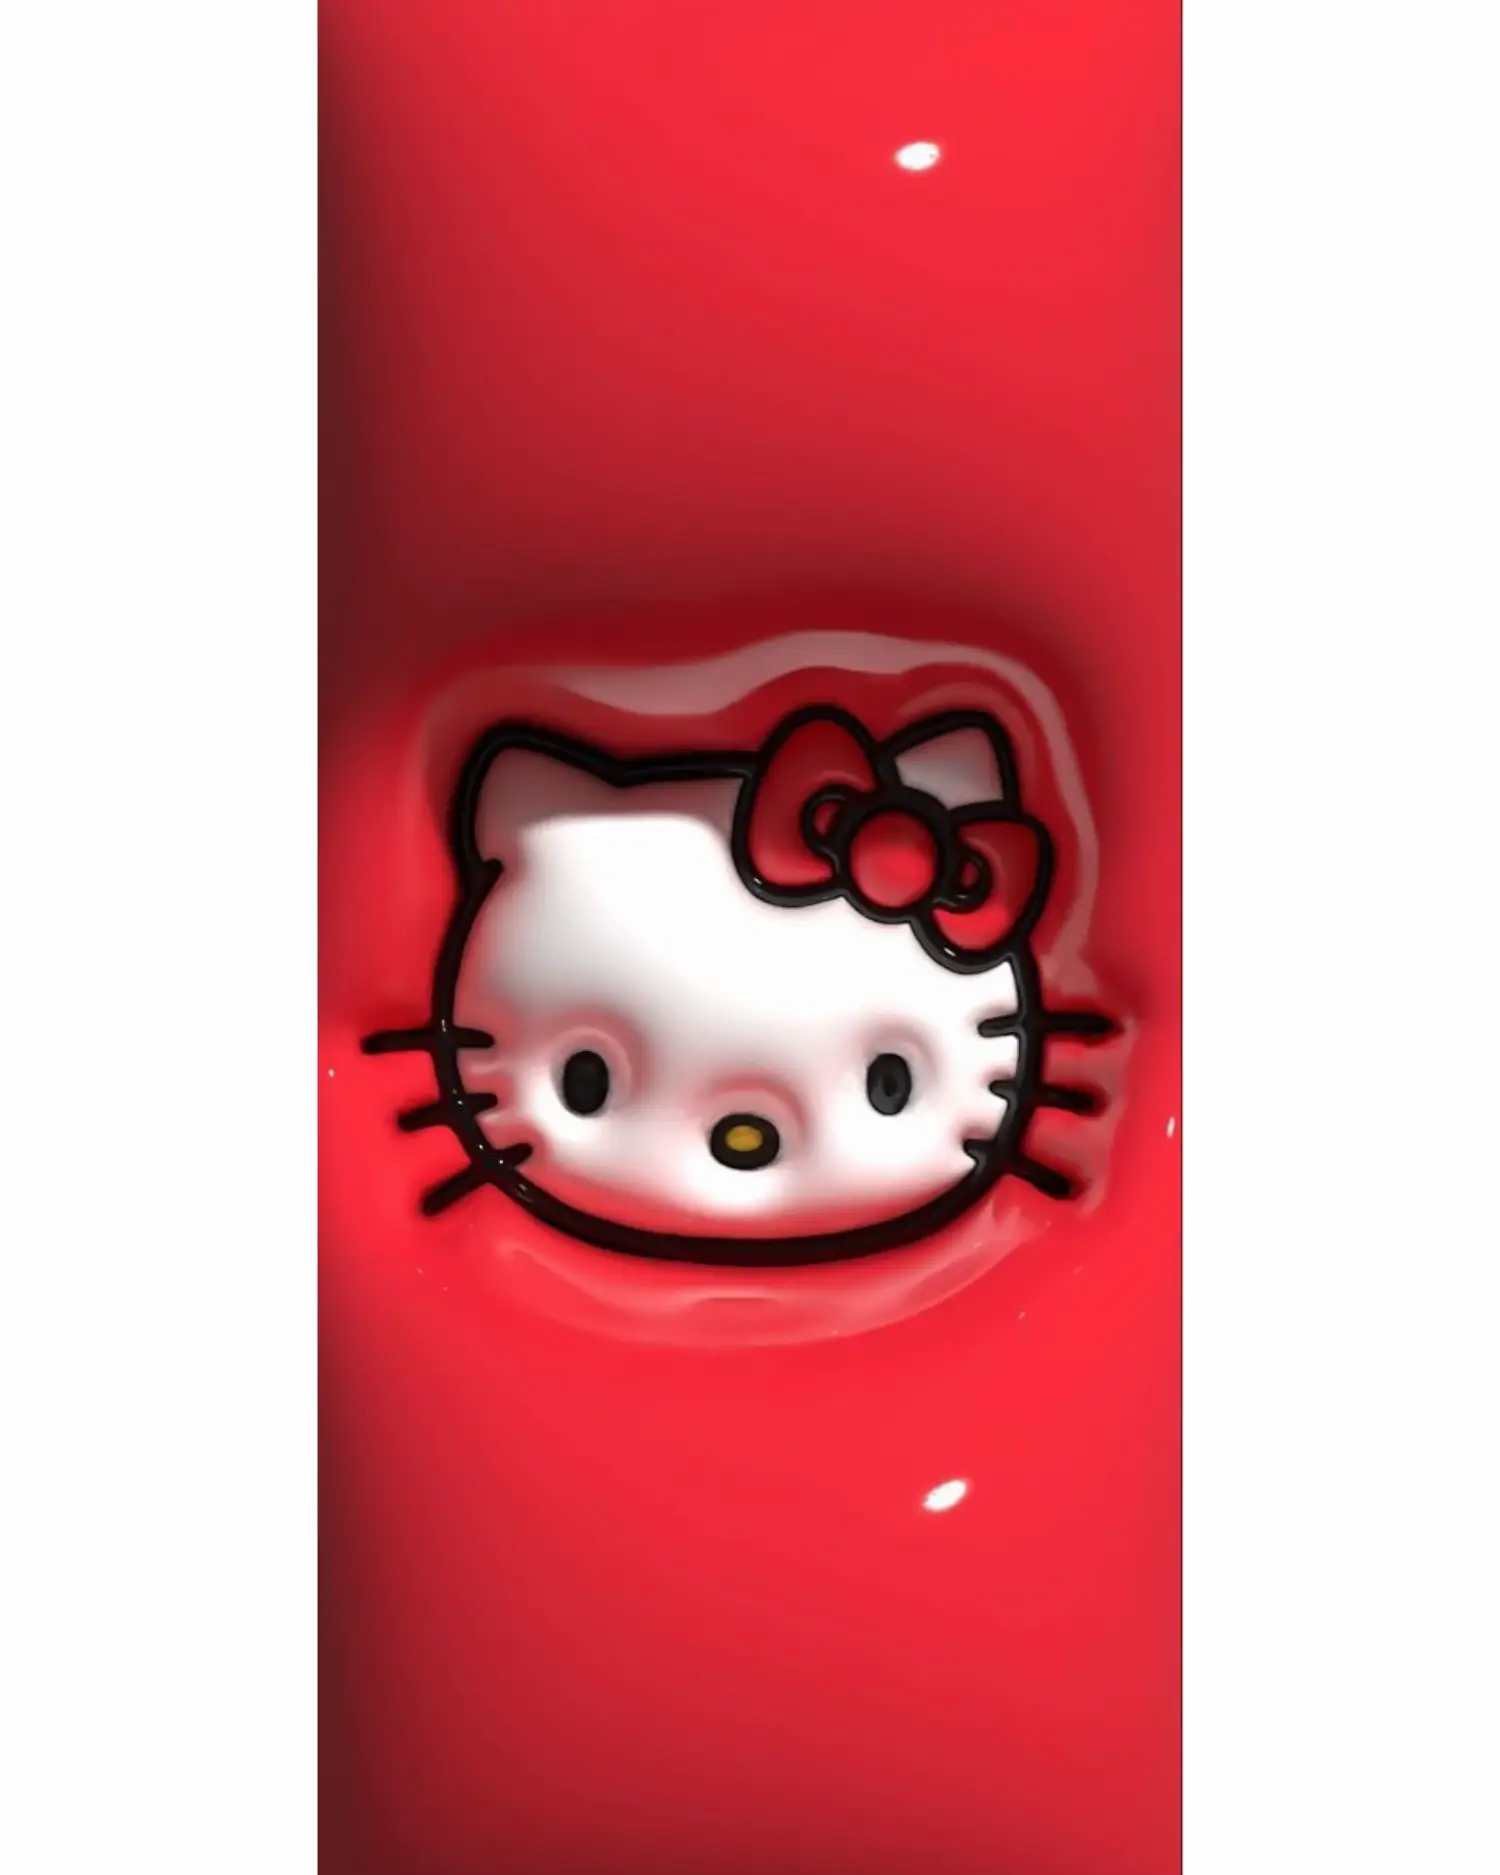 my hello kitty wallpaper : r/HelloKitty